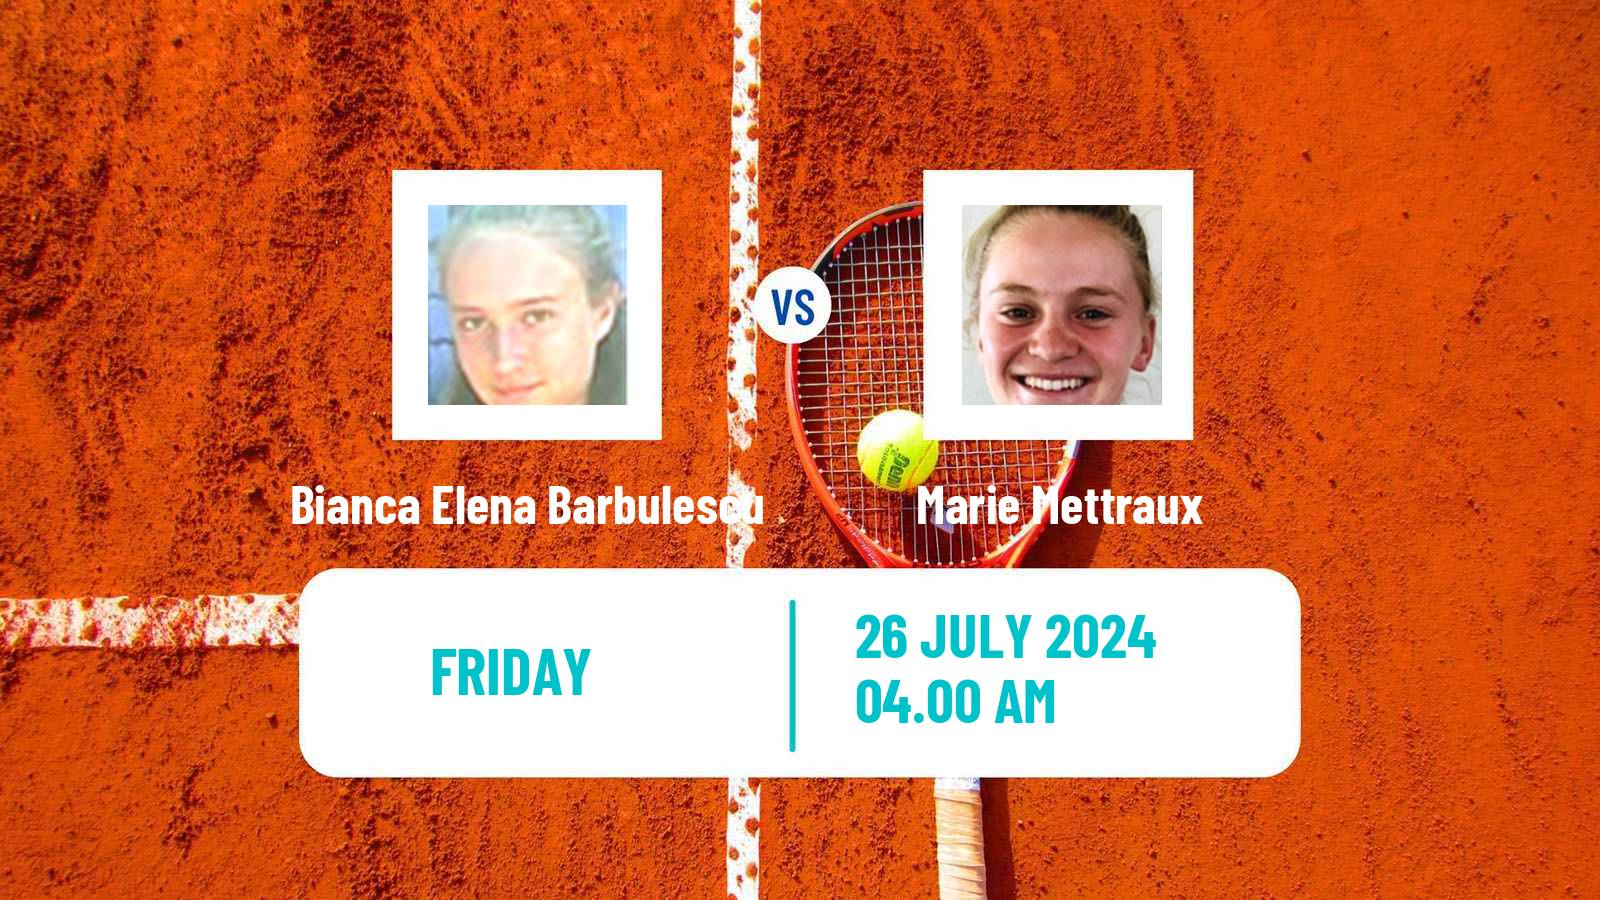 Tennis ITF W15 Satu Mare Women Bianca Elena Barbulescu - Marie Mettraux